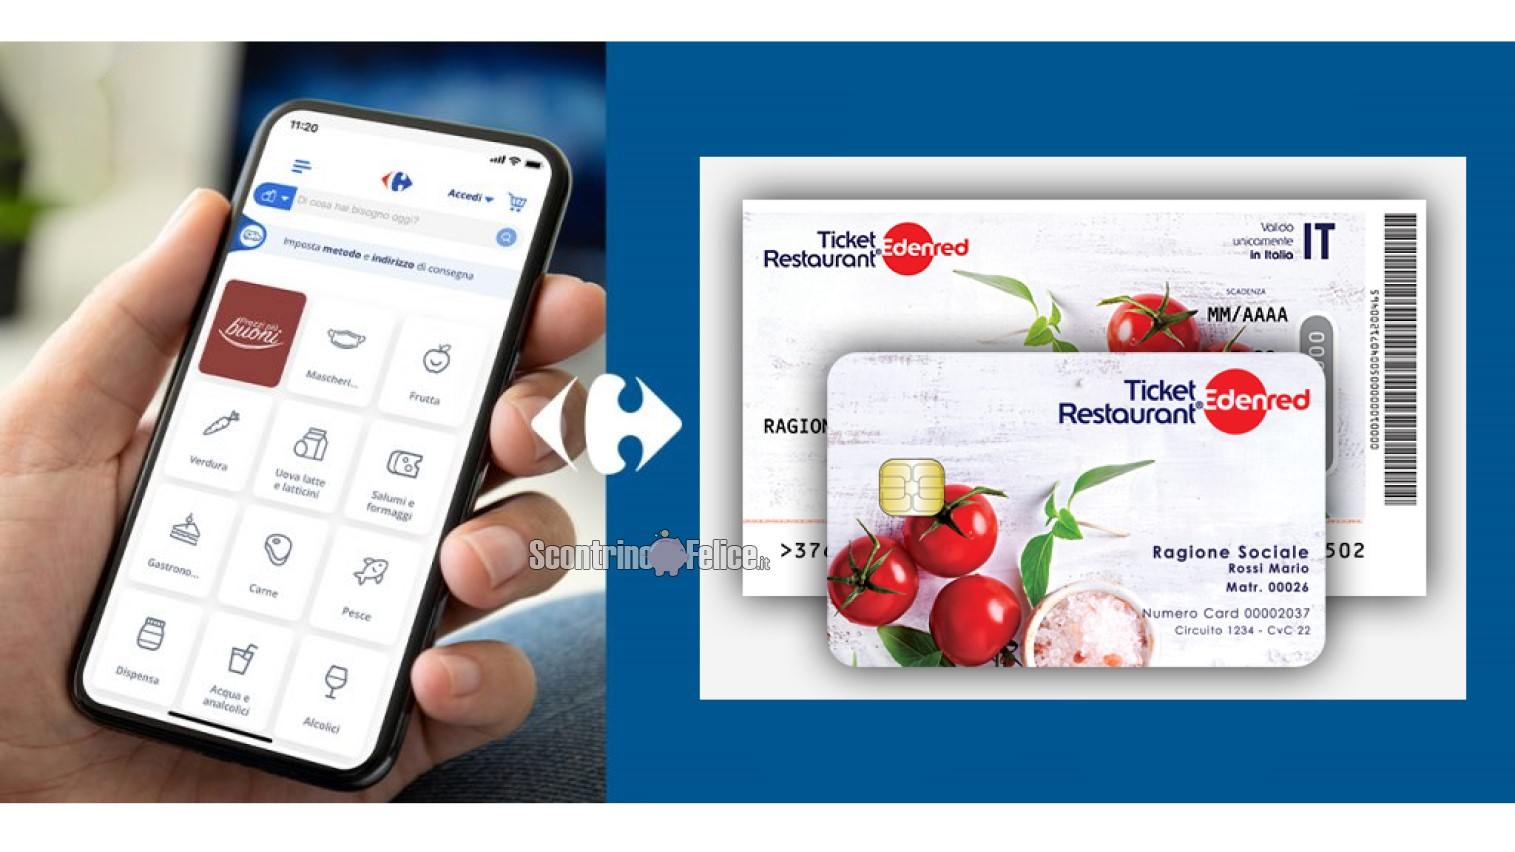 Novità Ticket Restaurant Edenred: da ora potrai utilizzarli per fare la spesa online su Carrefour.it!